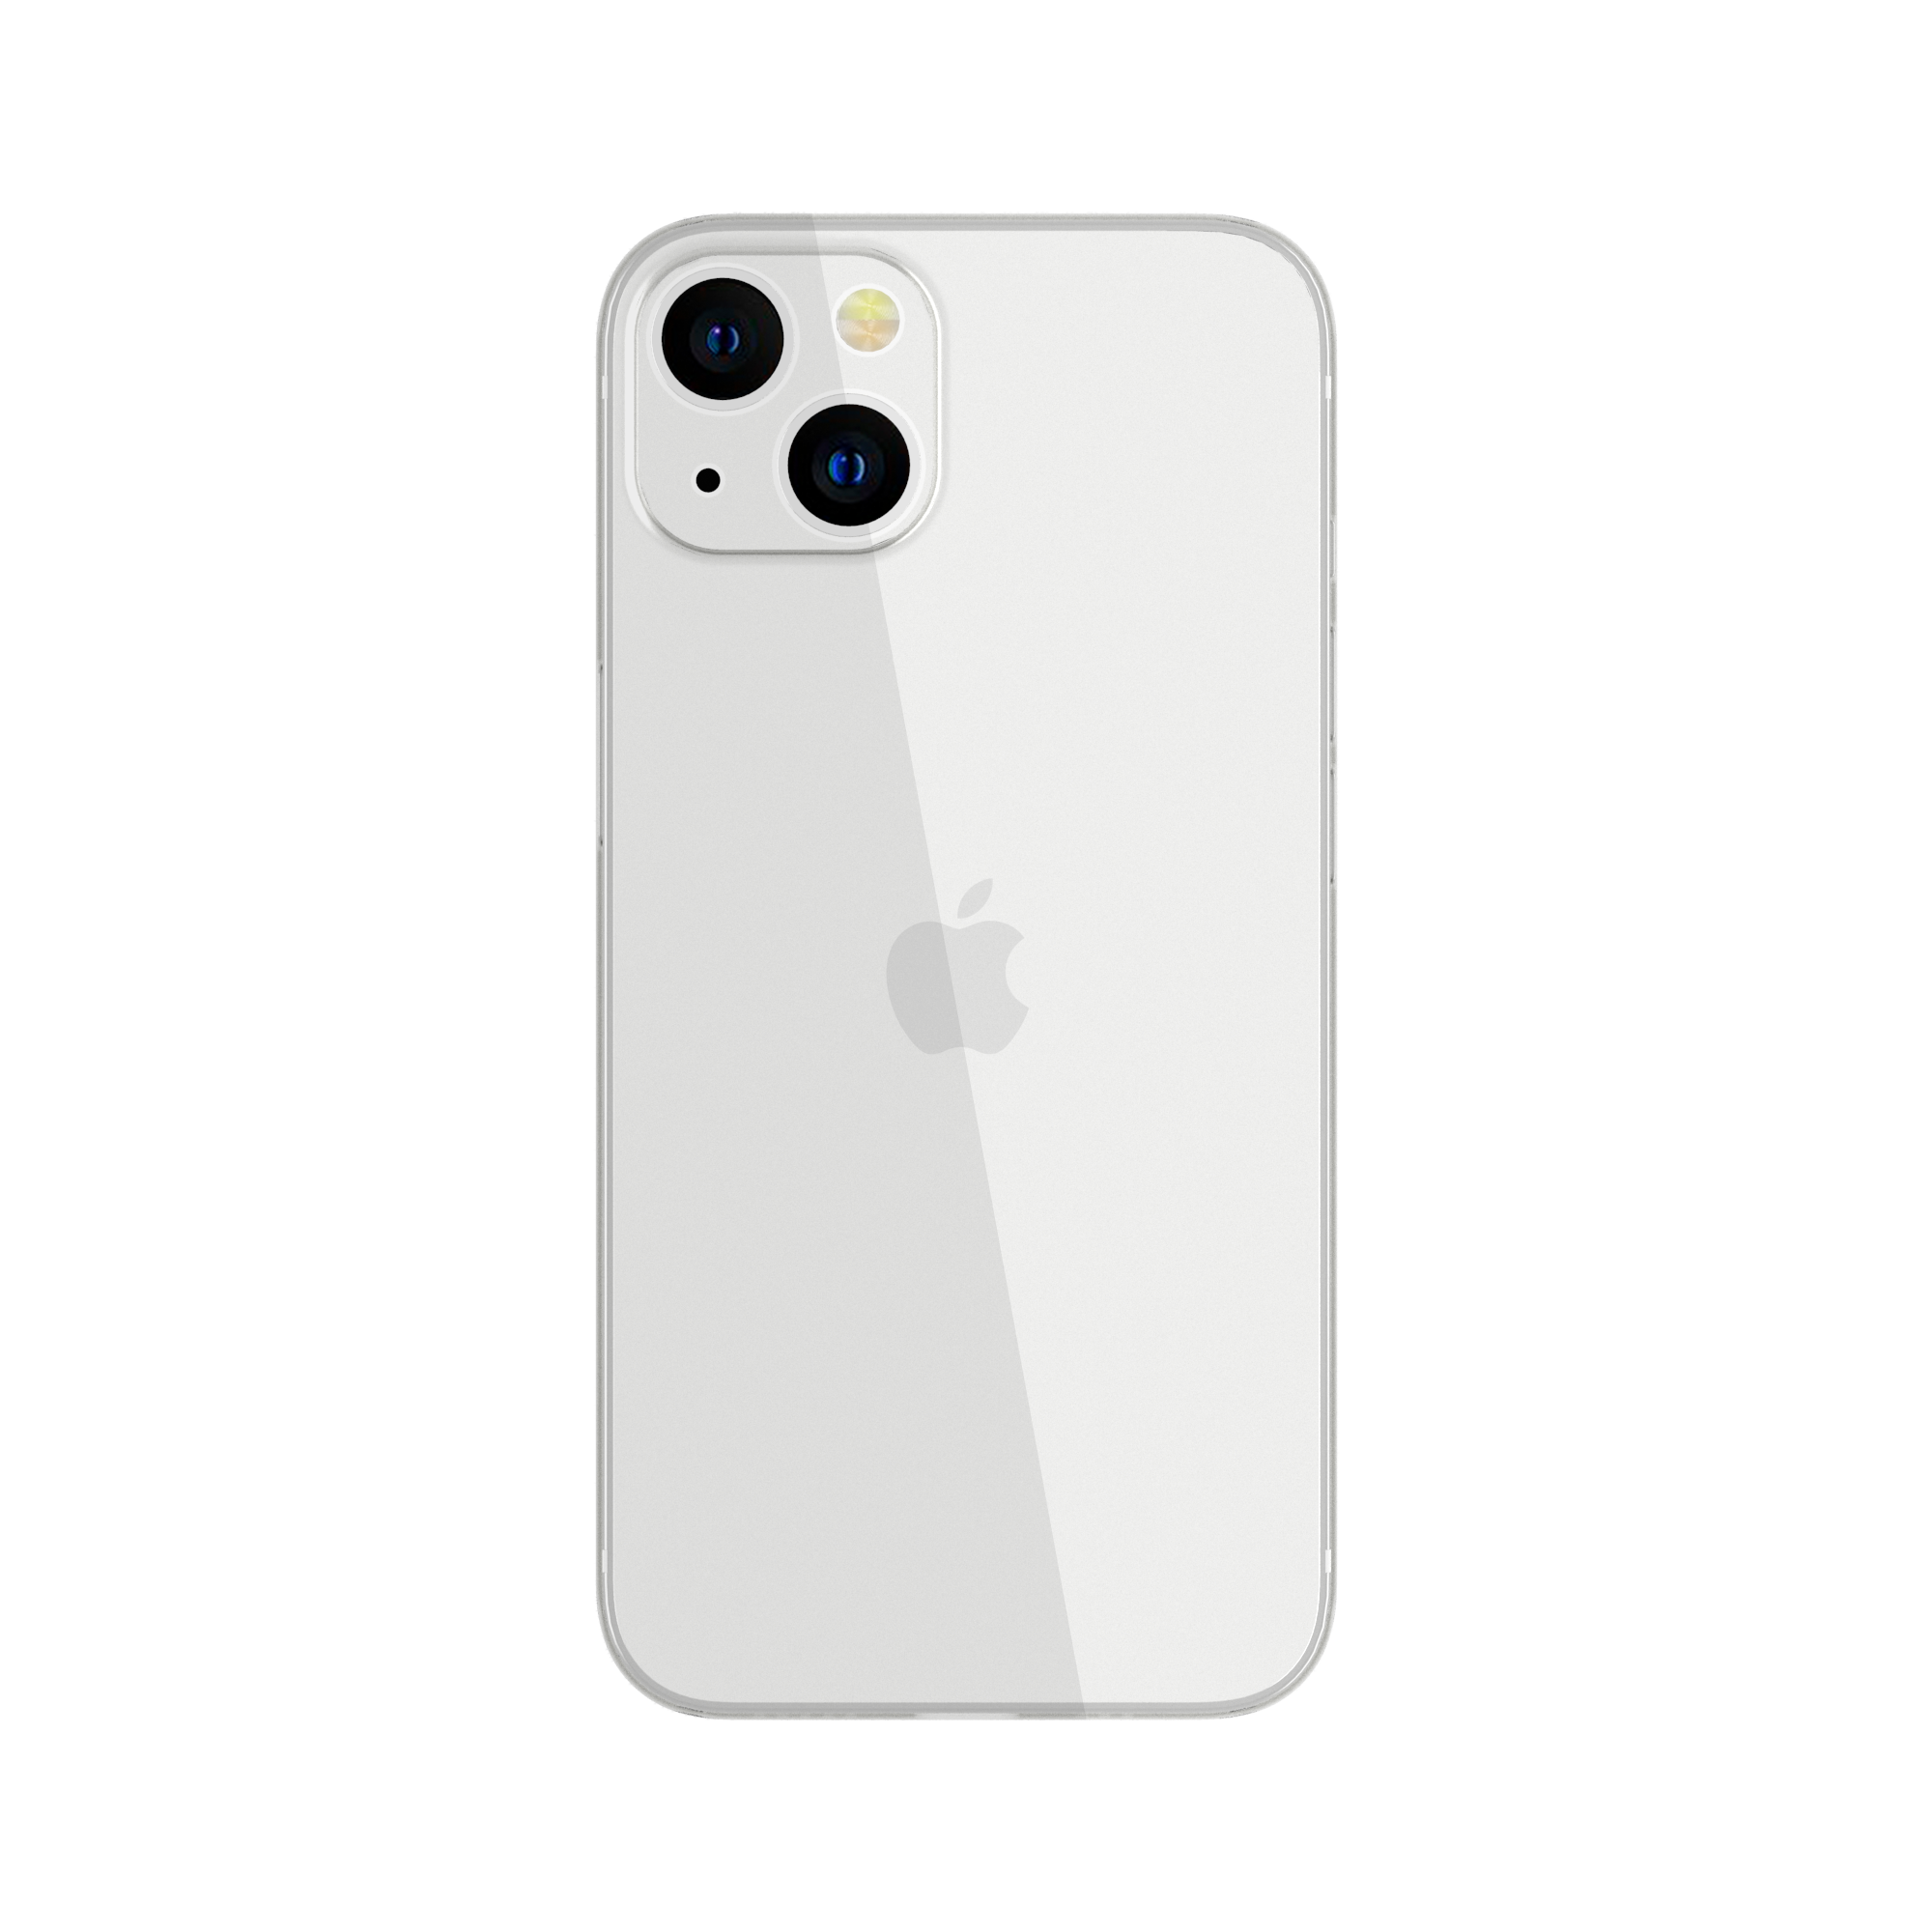 Bao da iPhone 13 Mini là một phụ kiện không thể thiếu để bảo vệ chiếc điện thoại đắt tiền của bạn. Hãy xem ảnh để tìm kiếm một chiếc bao da phù hợp với phong cách và sở thích của bạn.